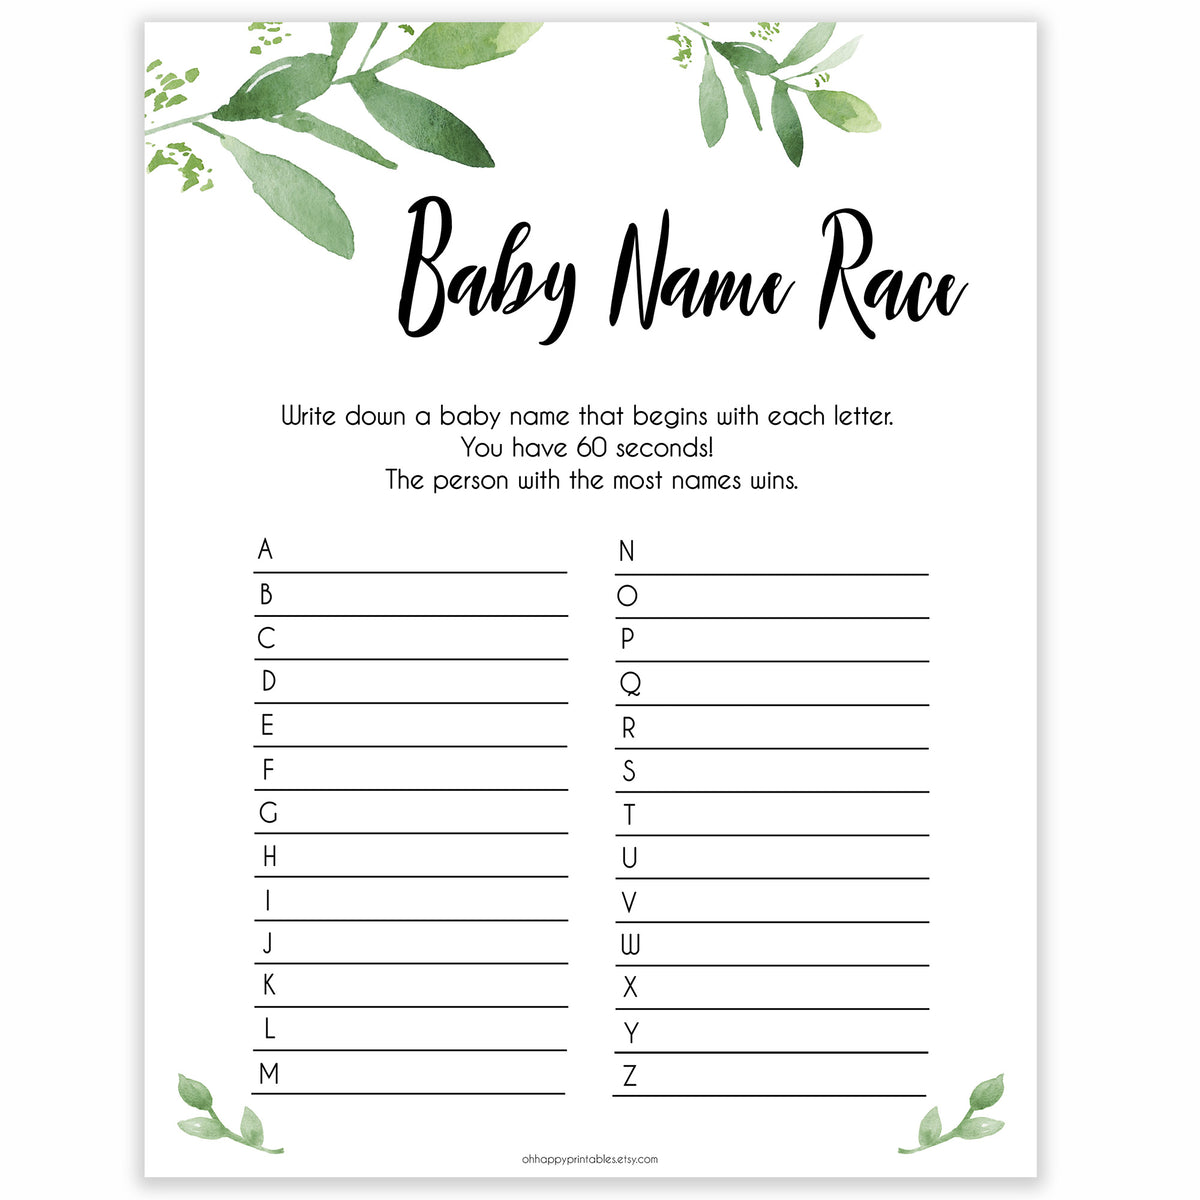 Baby Name Race Free Printable